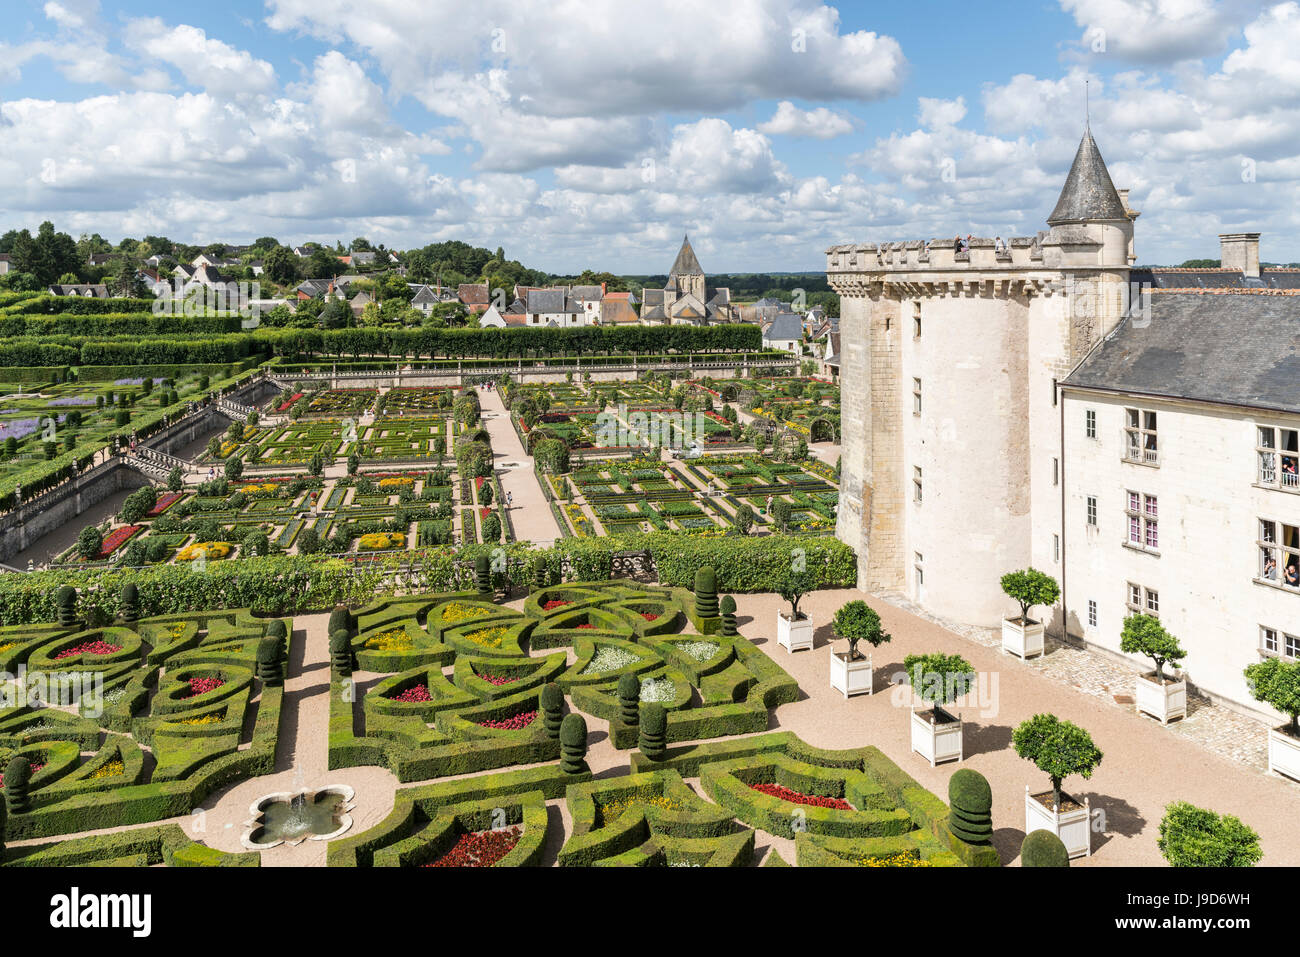 Los jardines del castillo de Villandry desde arriba, Villandry, Sitio del Patrimonio Mundial de la UNESCO, Indre-et-Loire, Valle del Loira, Francia, Europa Foto de stock